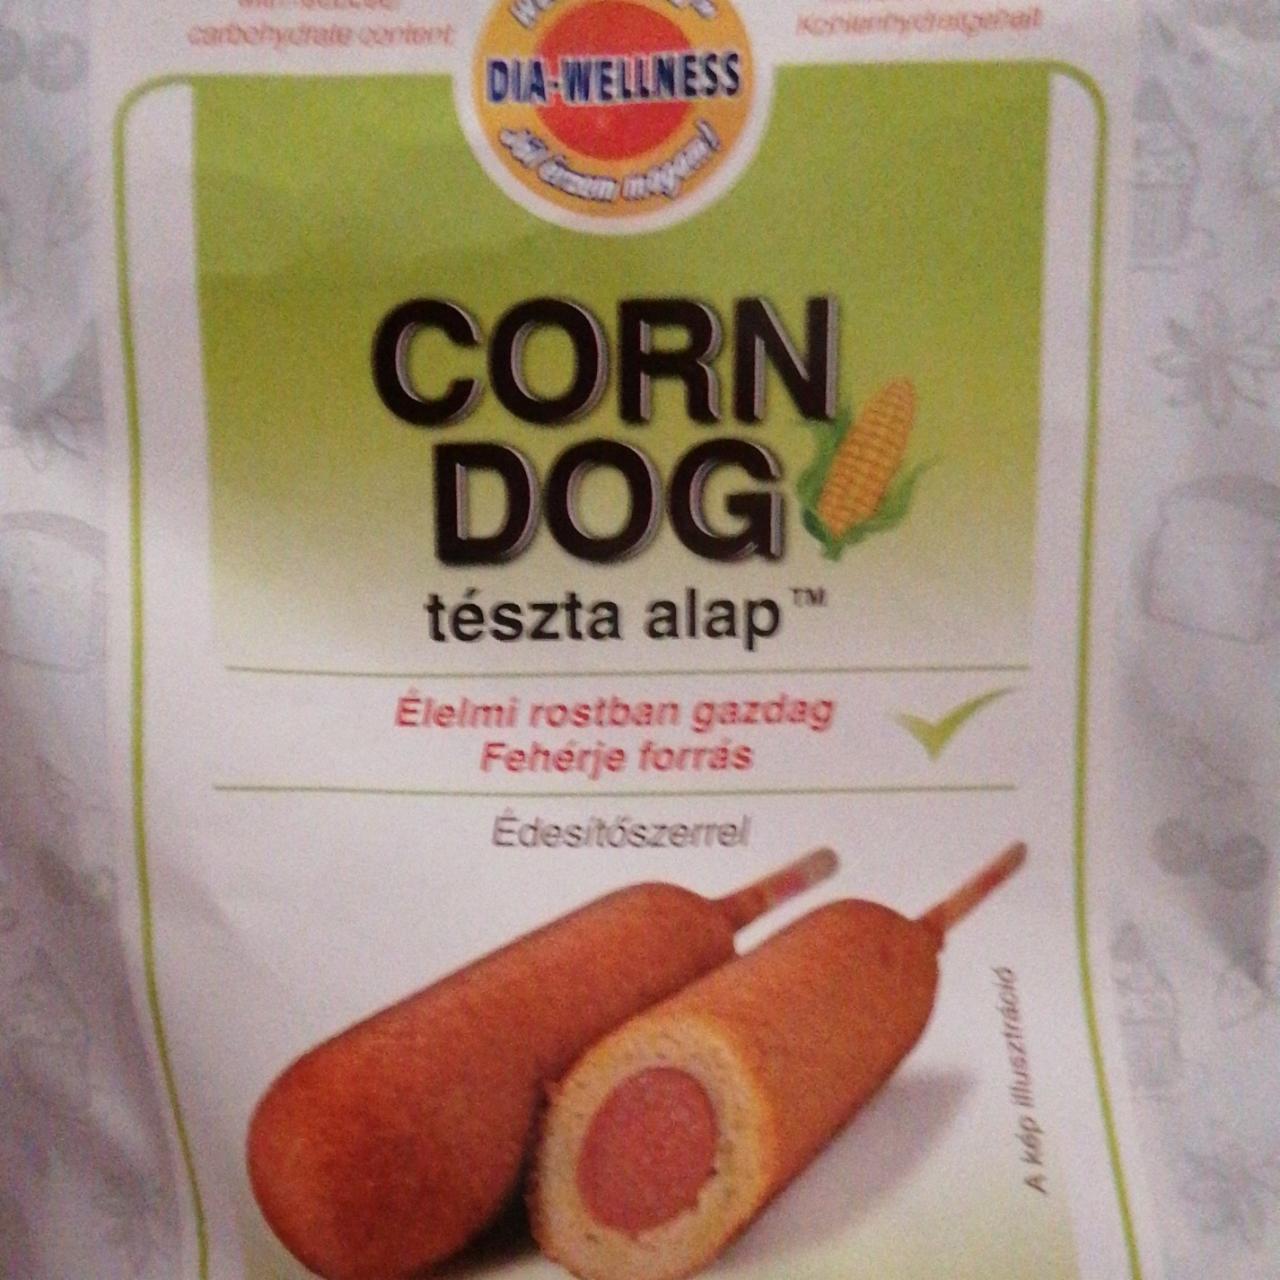 Képek - Corn dog tészta alap Dia-Wellness